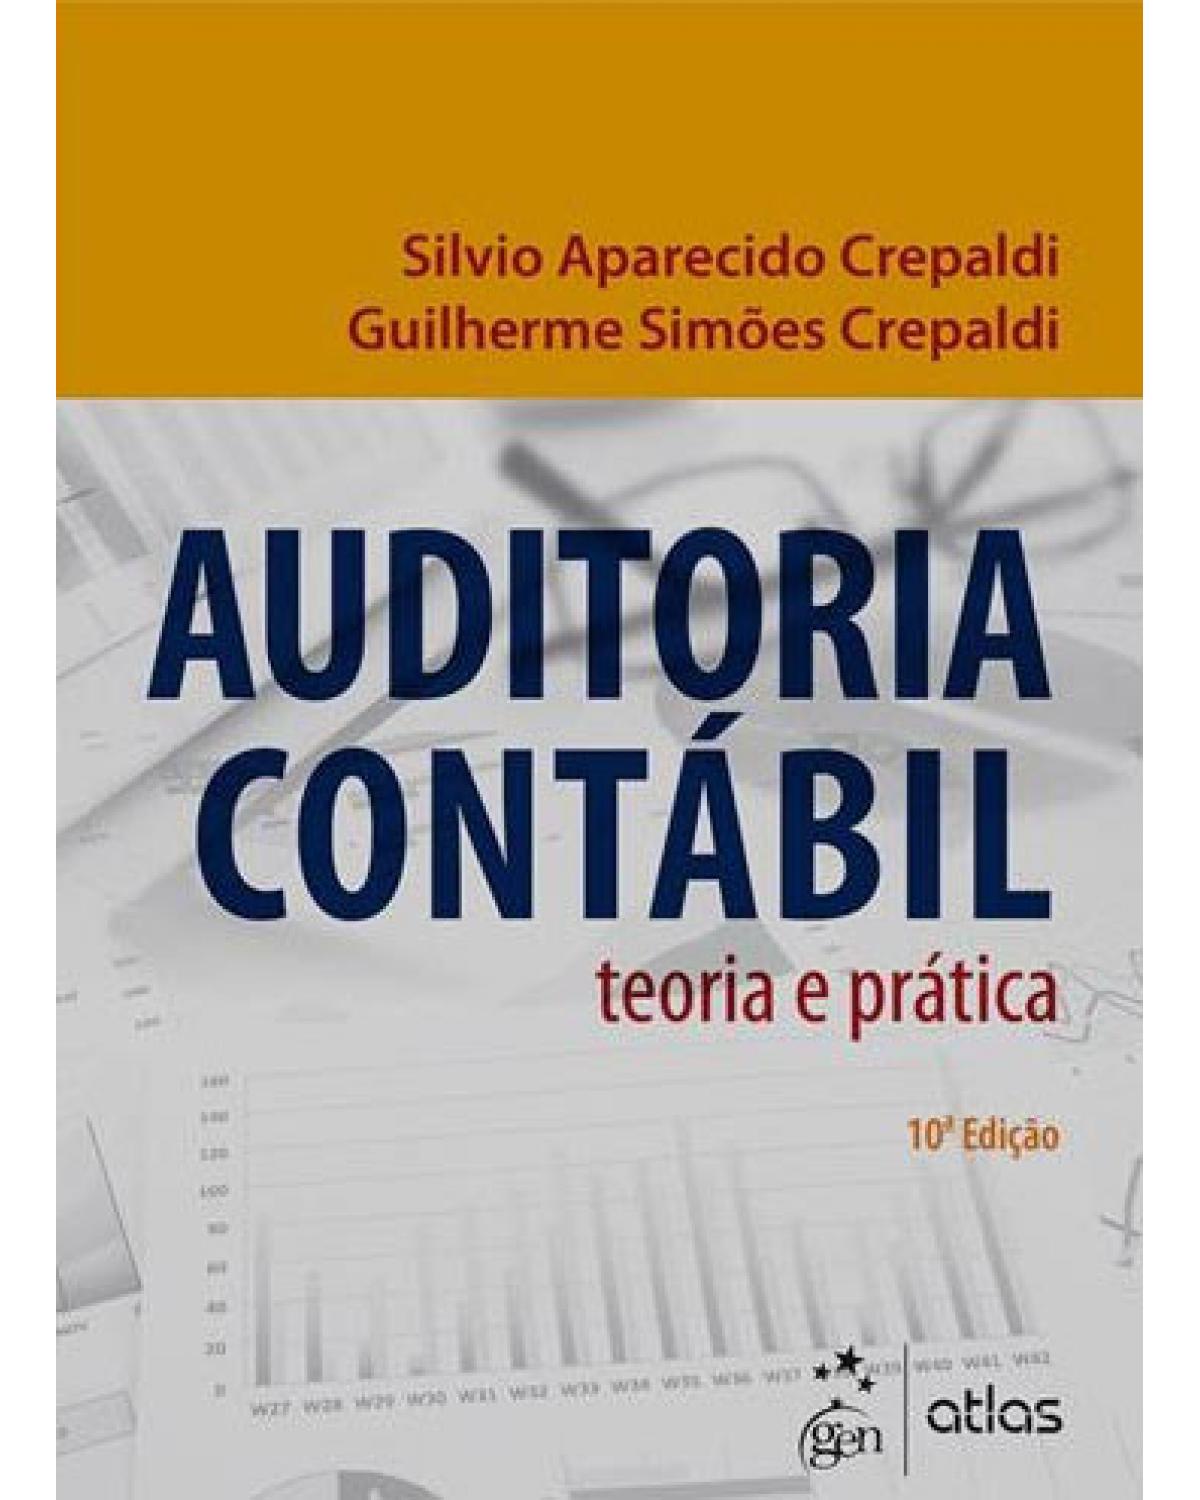 Auditoria contábil - Teoria e prática - 10ª Edição | 2016